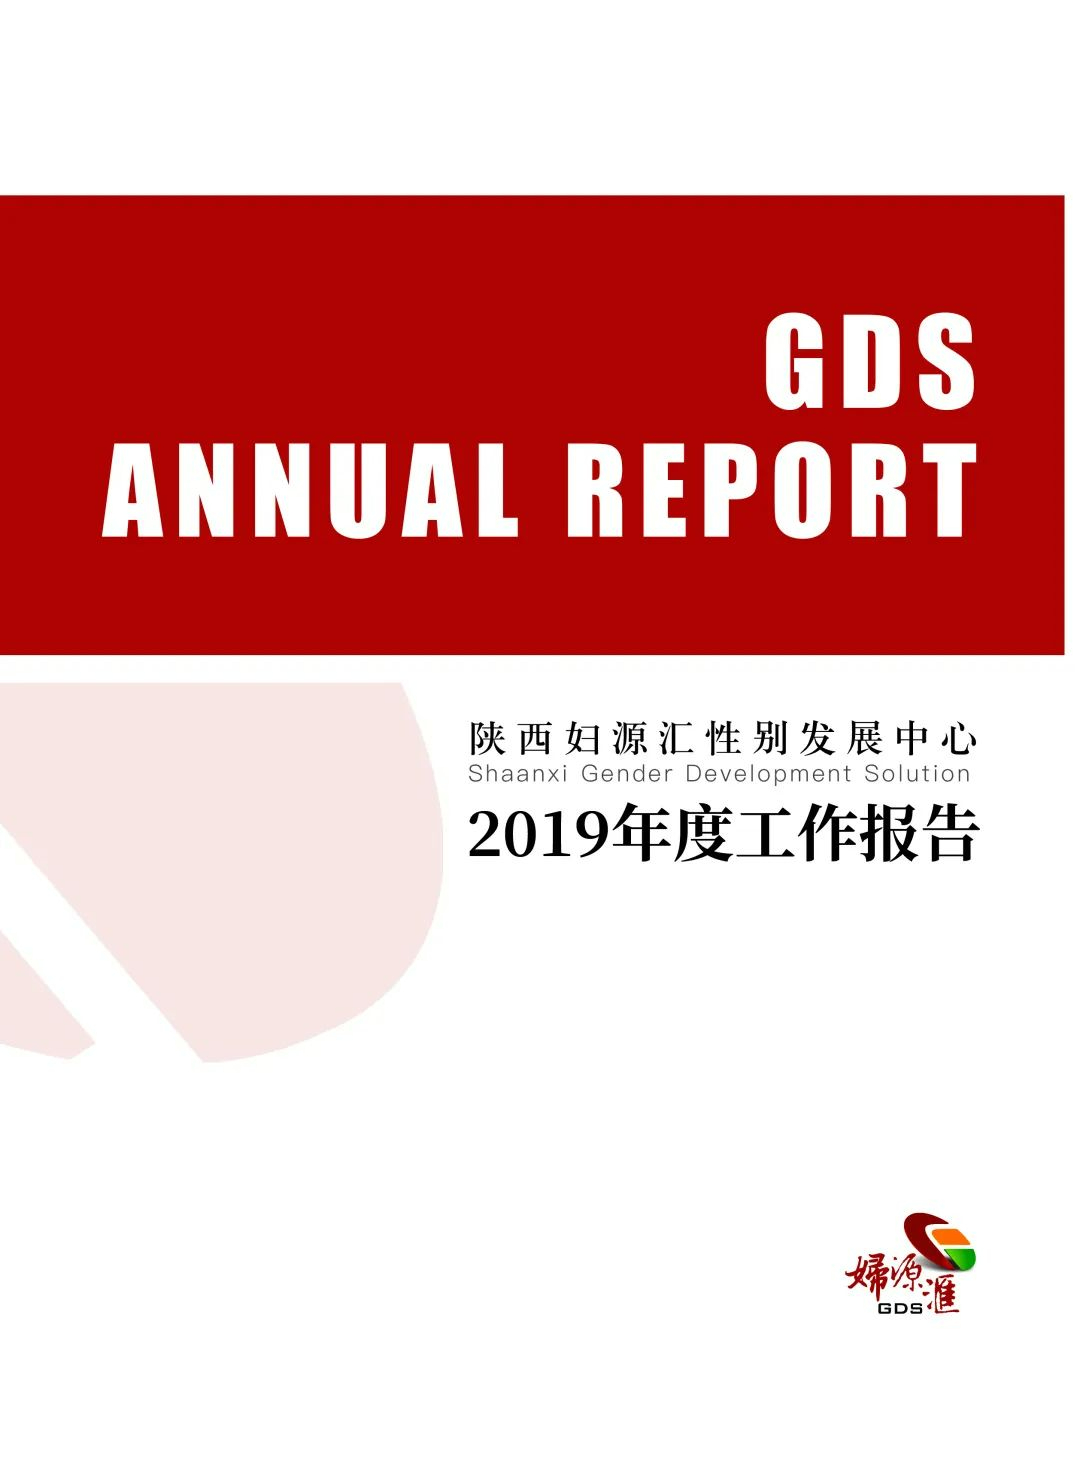 2019年年度工作报告